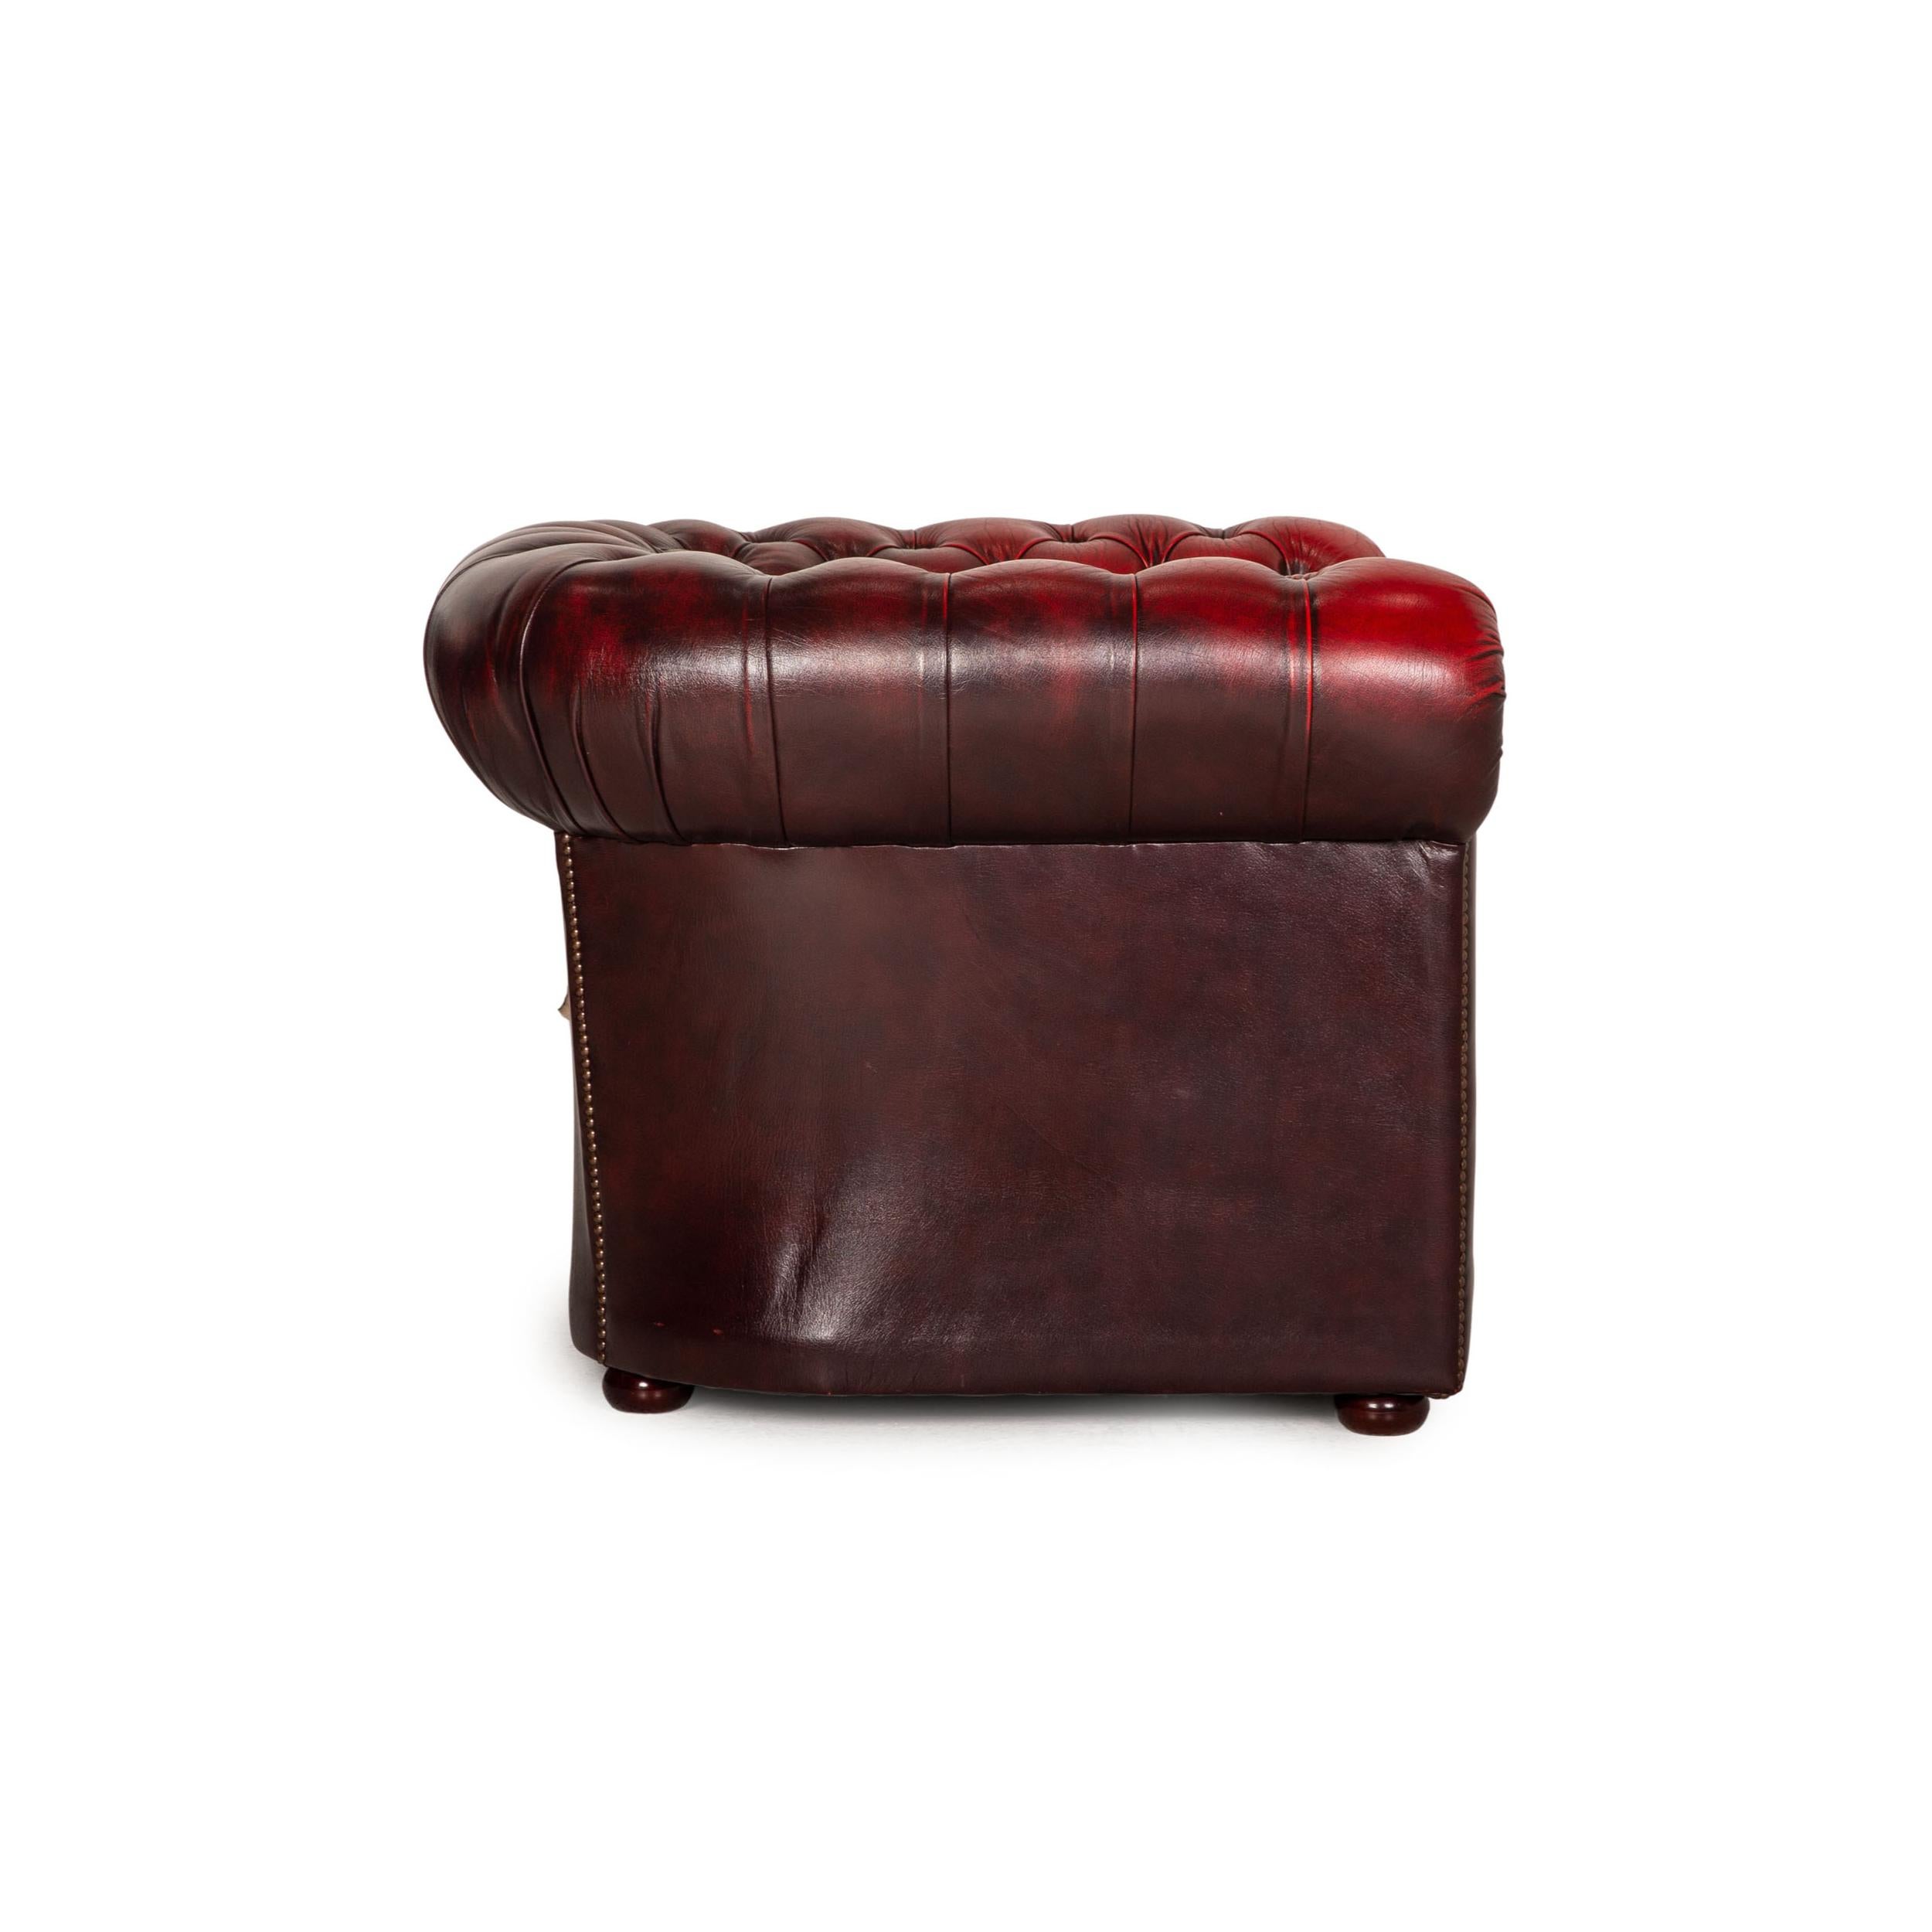 Chesterfield Tudor Leather Armchair Dark Red 2